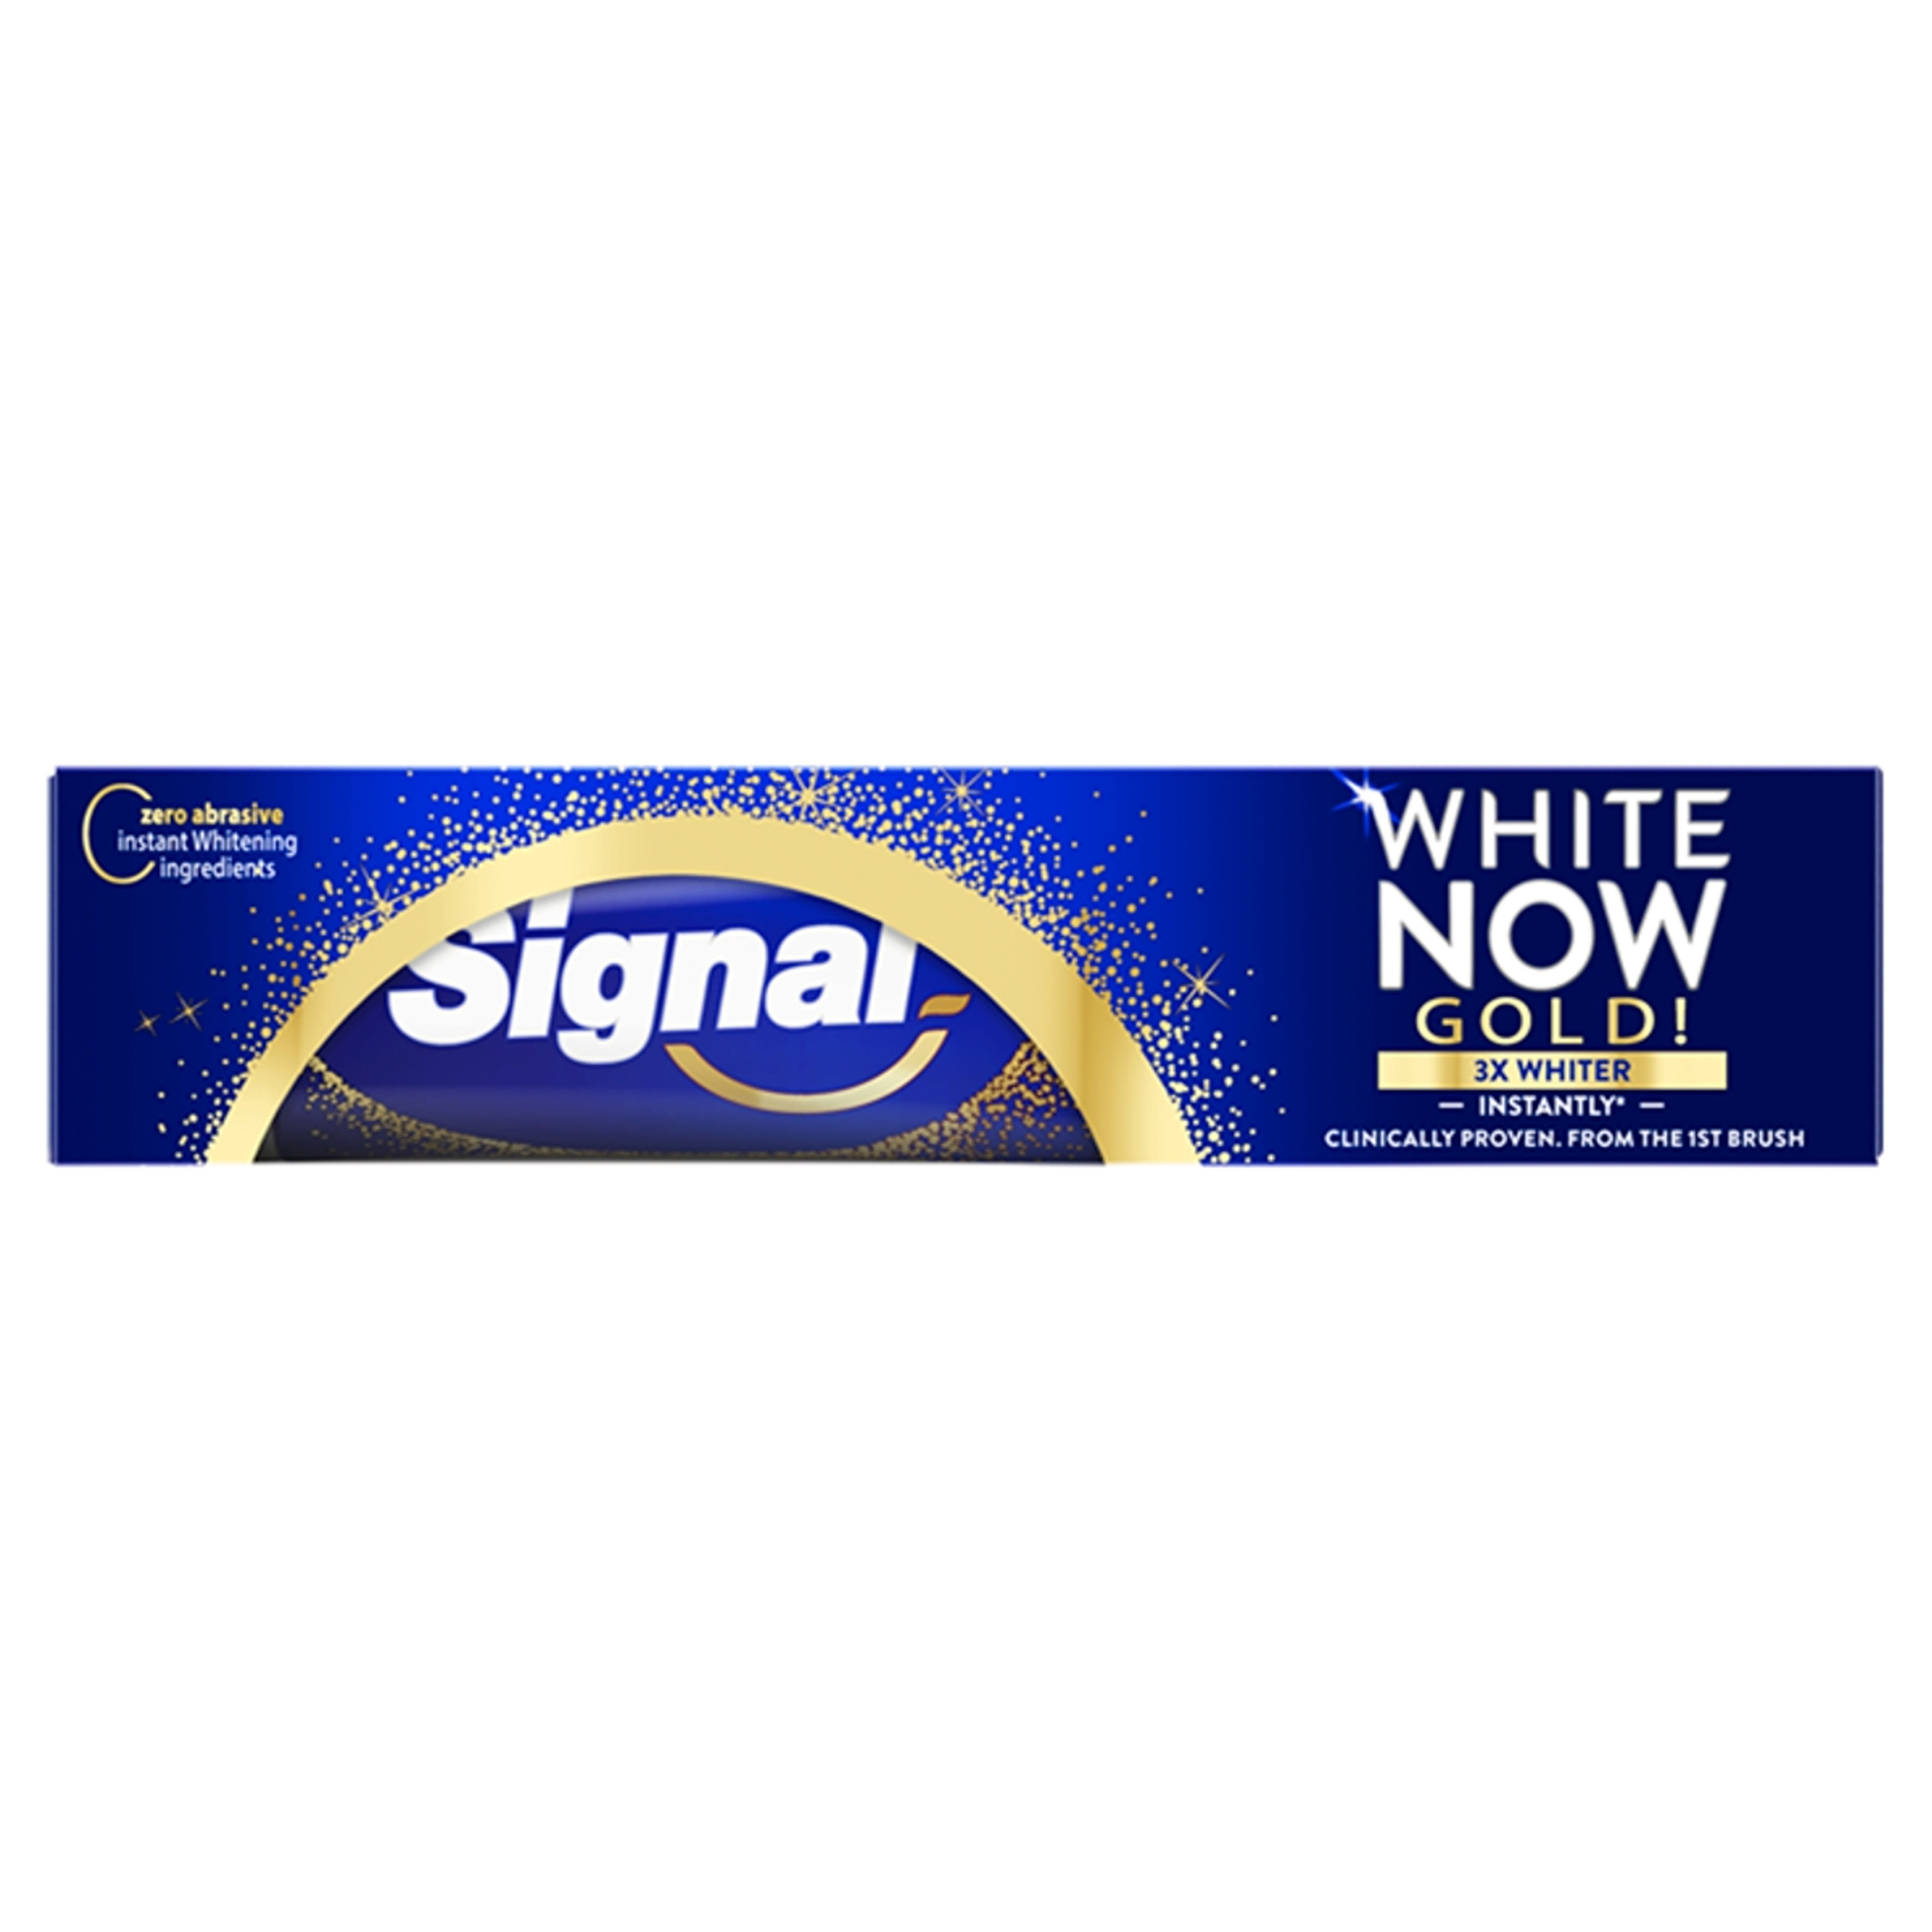 Signal White Now Gold fogkrém - 75 ml